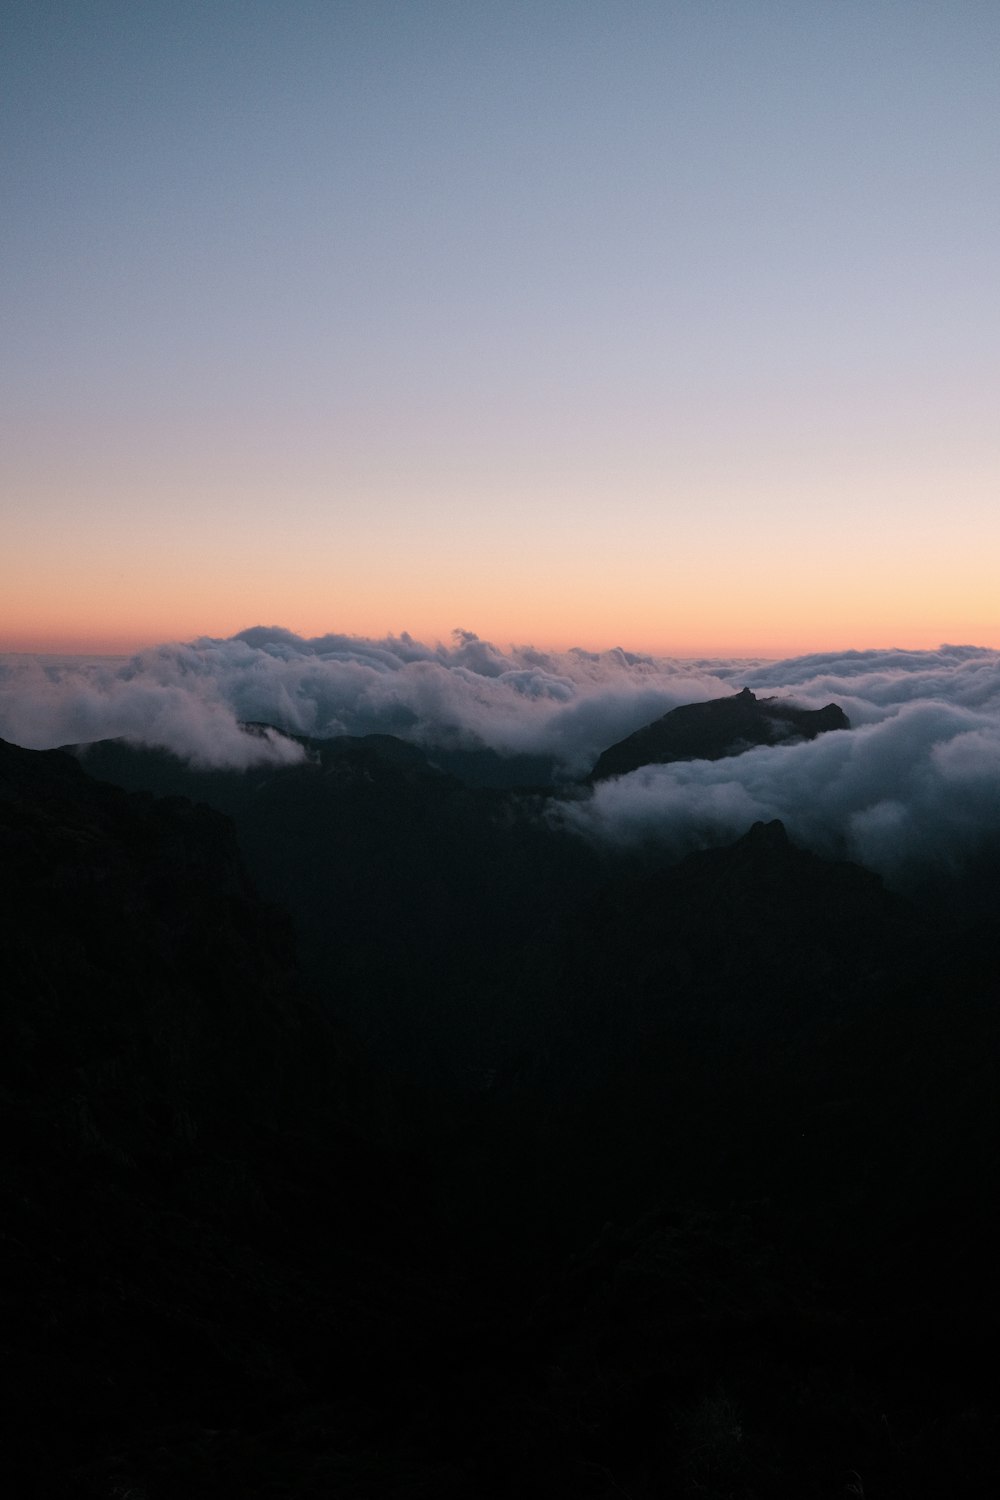 Una vista de una cadena montañosa con nubes bajas